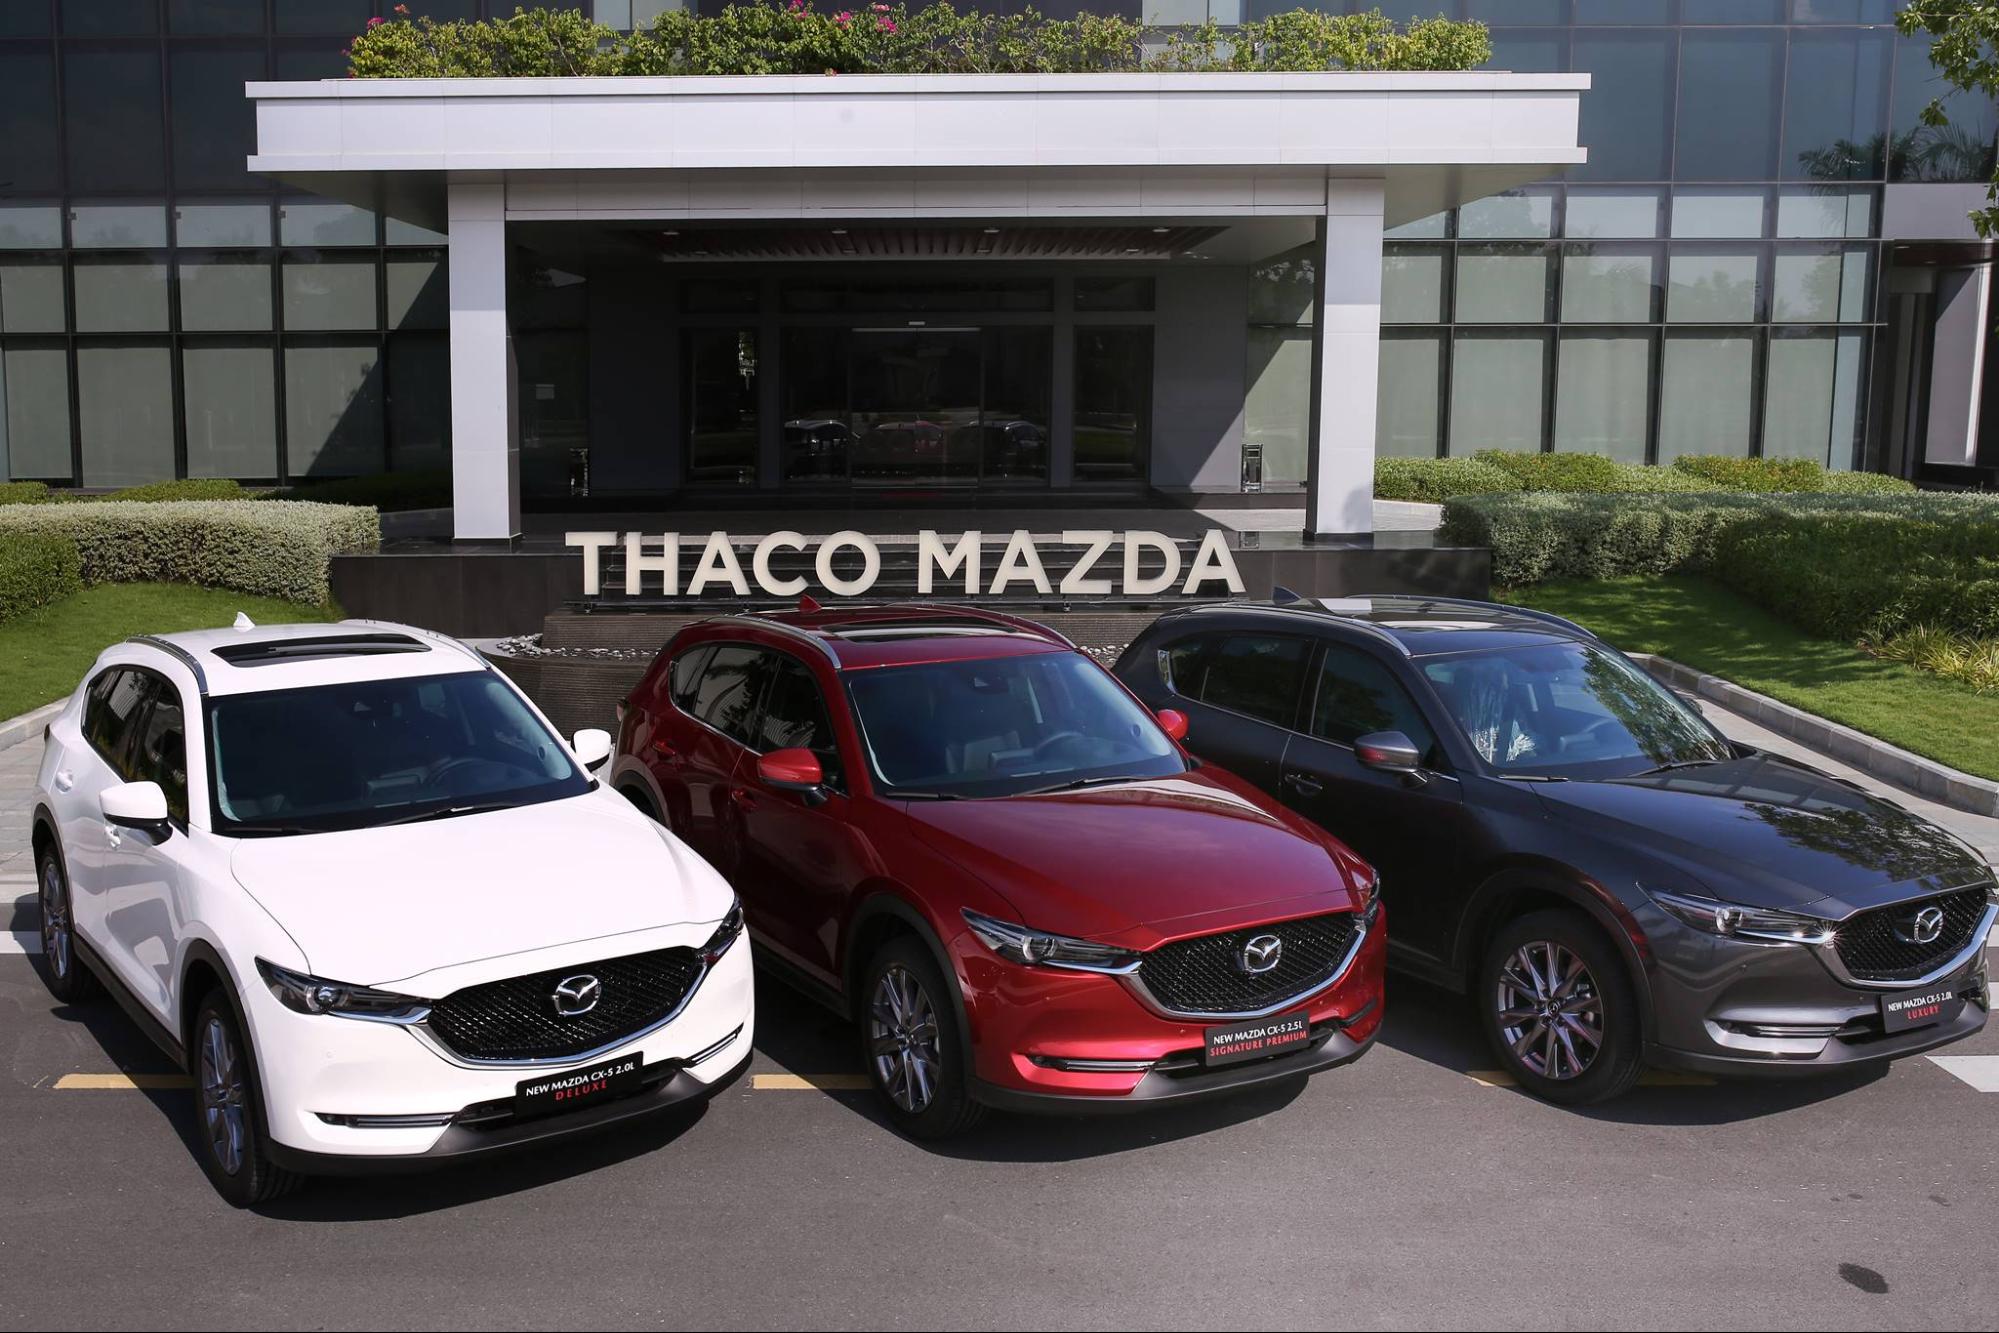 Mazda CX-5 đã tạo nên được kỷ lục mới với 3 tháng liên tiếp dẫn đầu danh sách Top 10 xe bán chạy nhất.